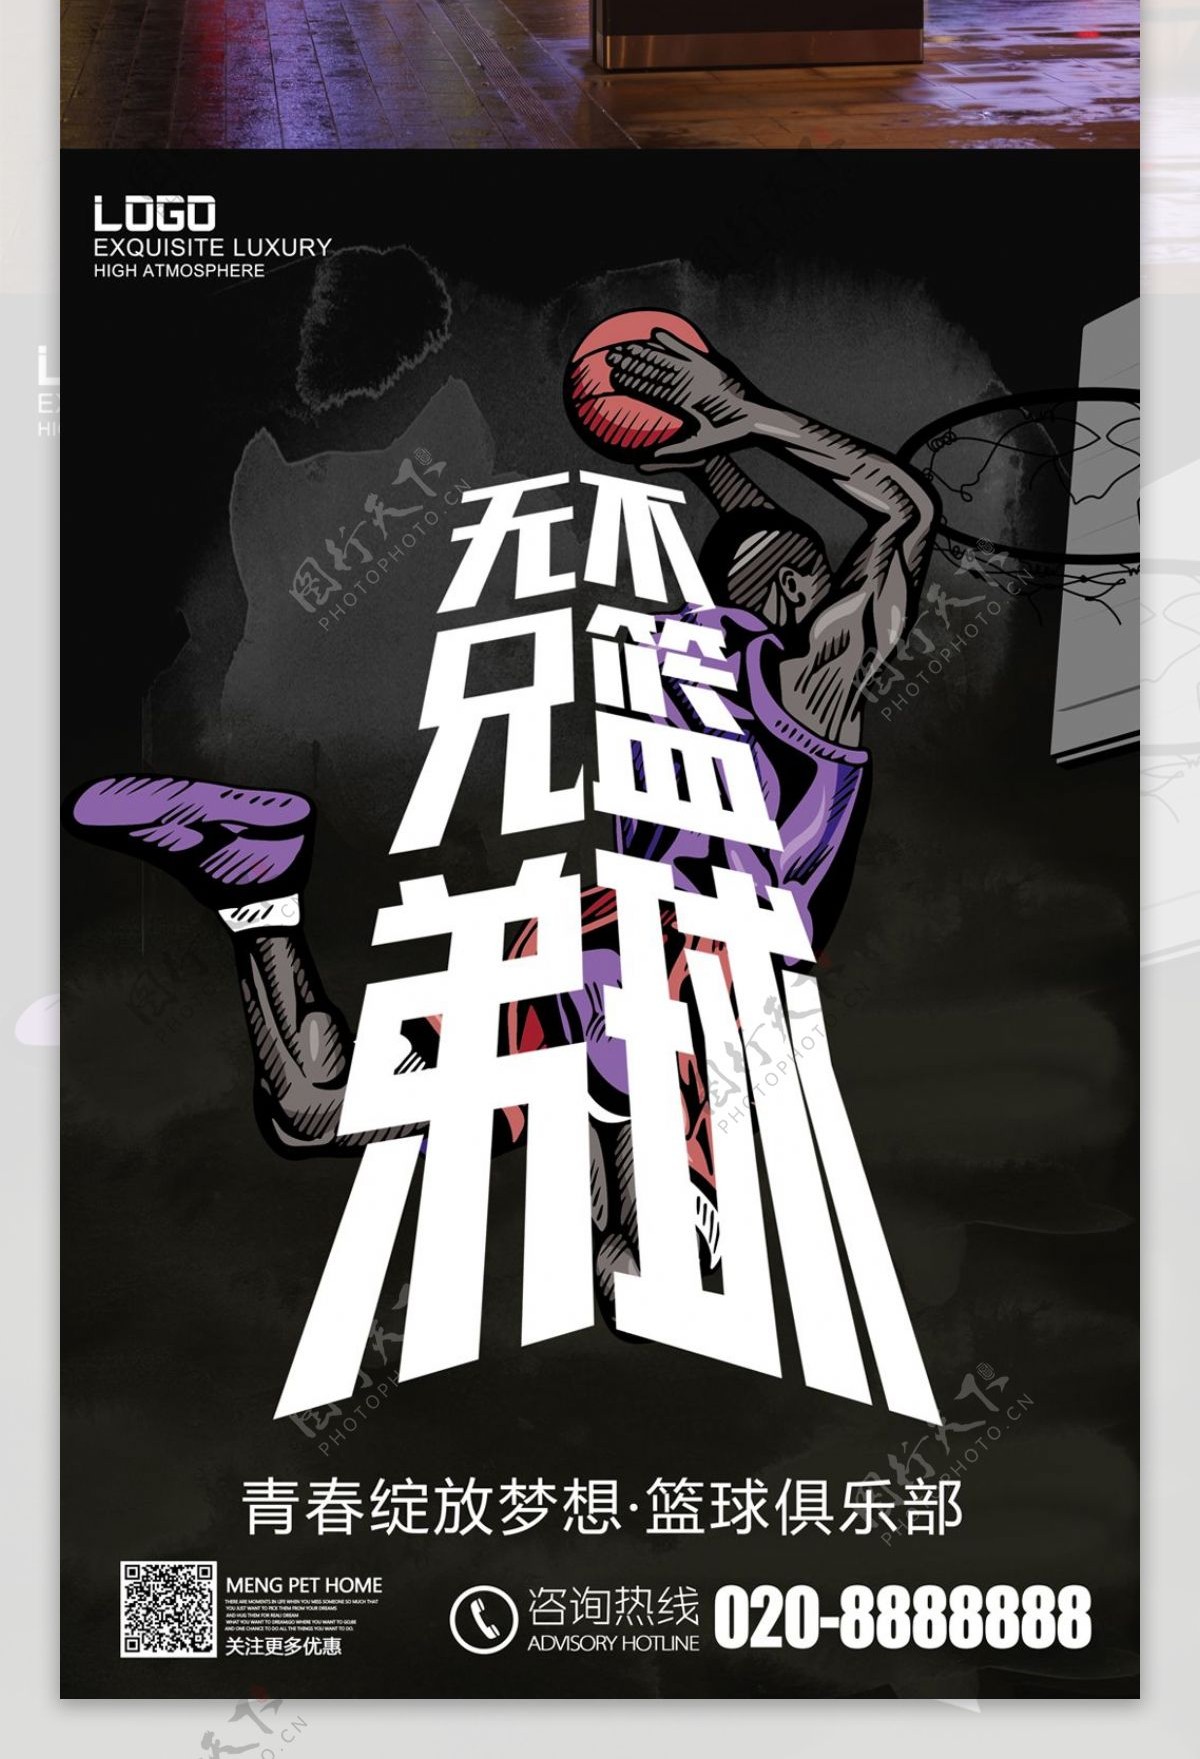 篮球俱乐部宣传海报